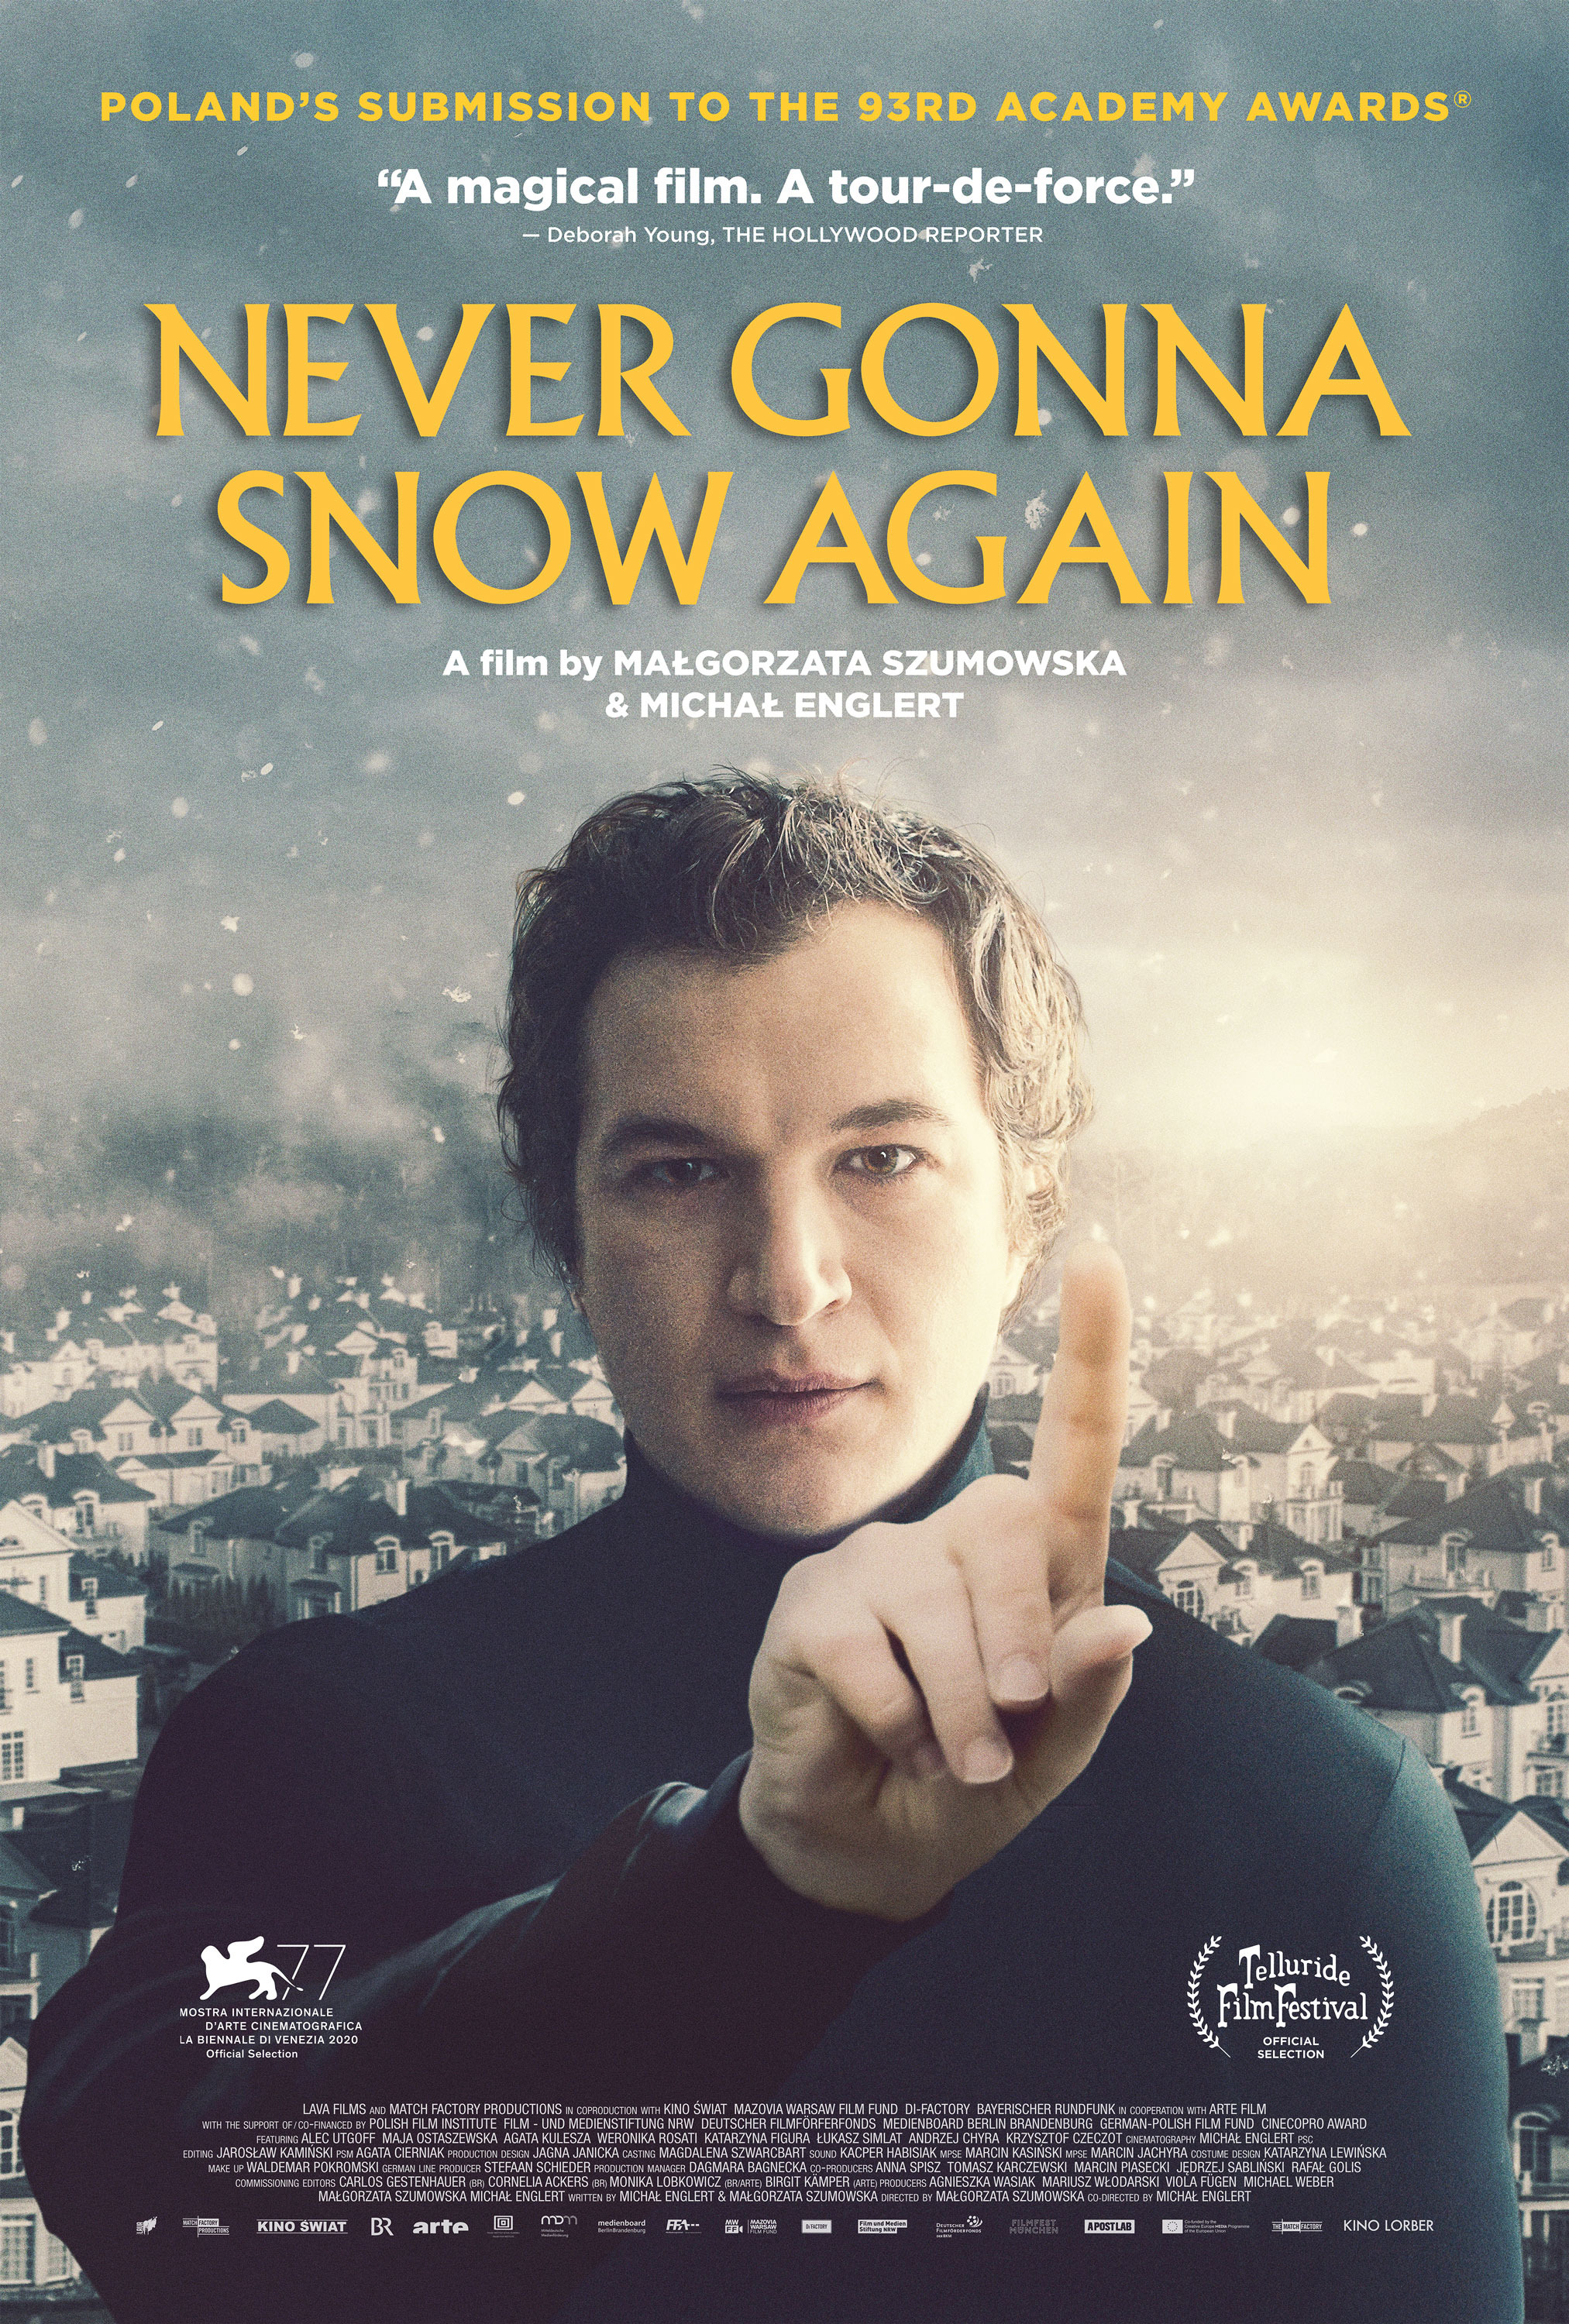 Mega Sized Movie Poster Image for Sniegu juz nigdy nie bedzie 